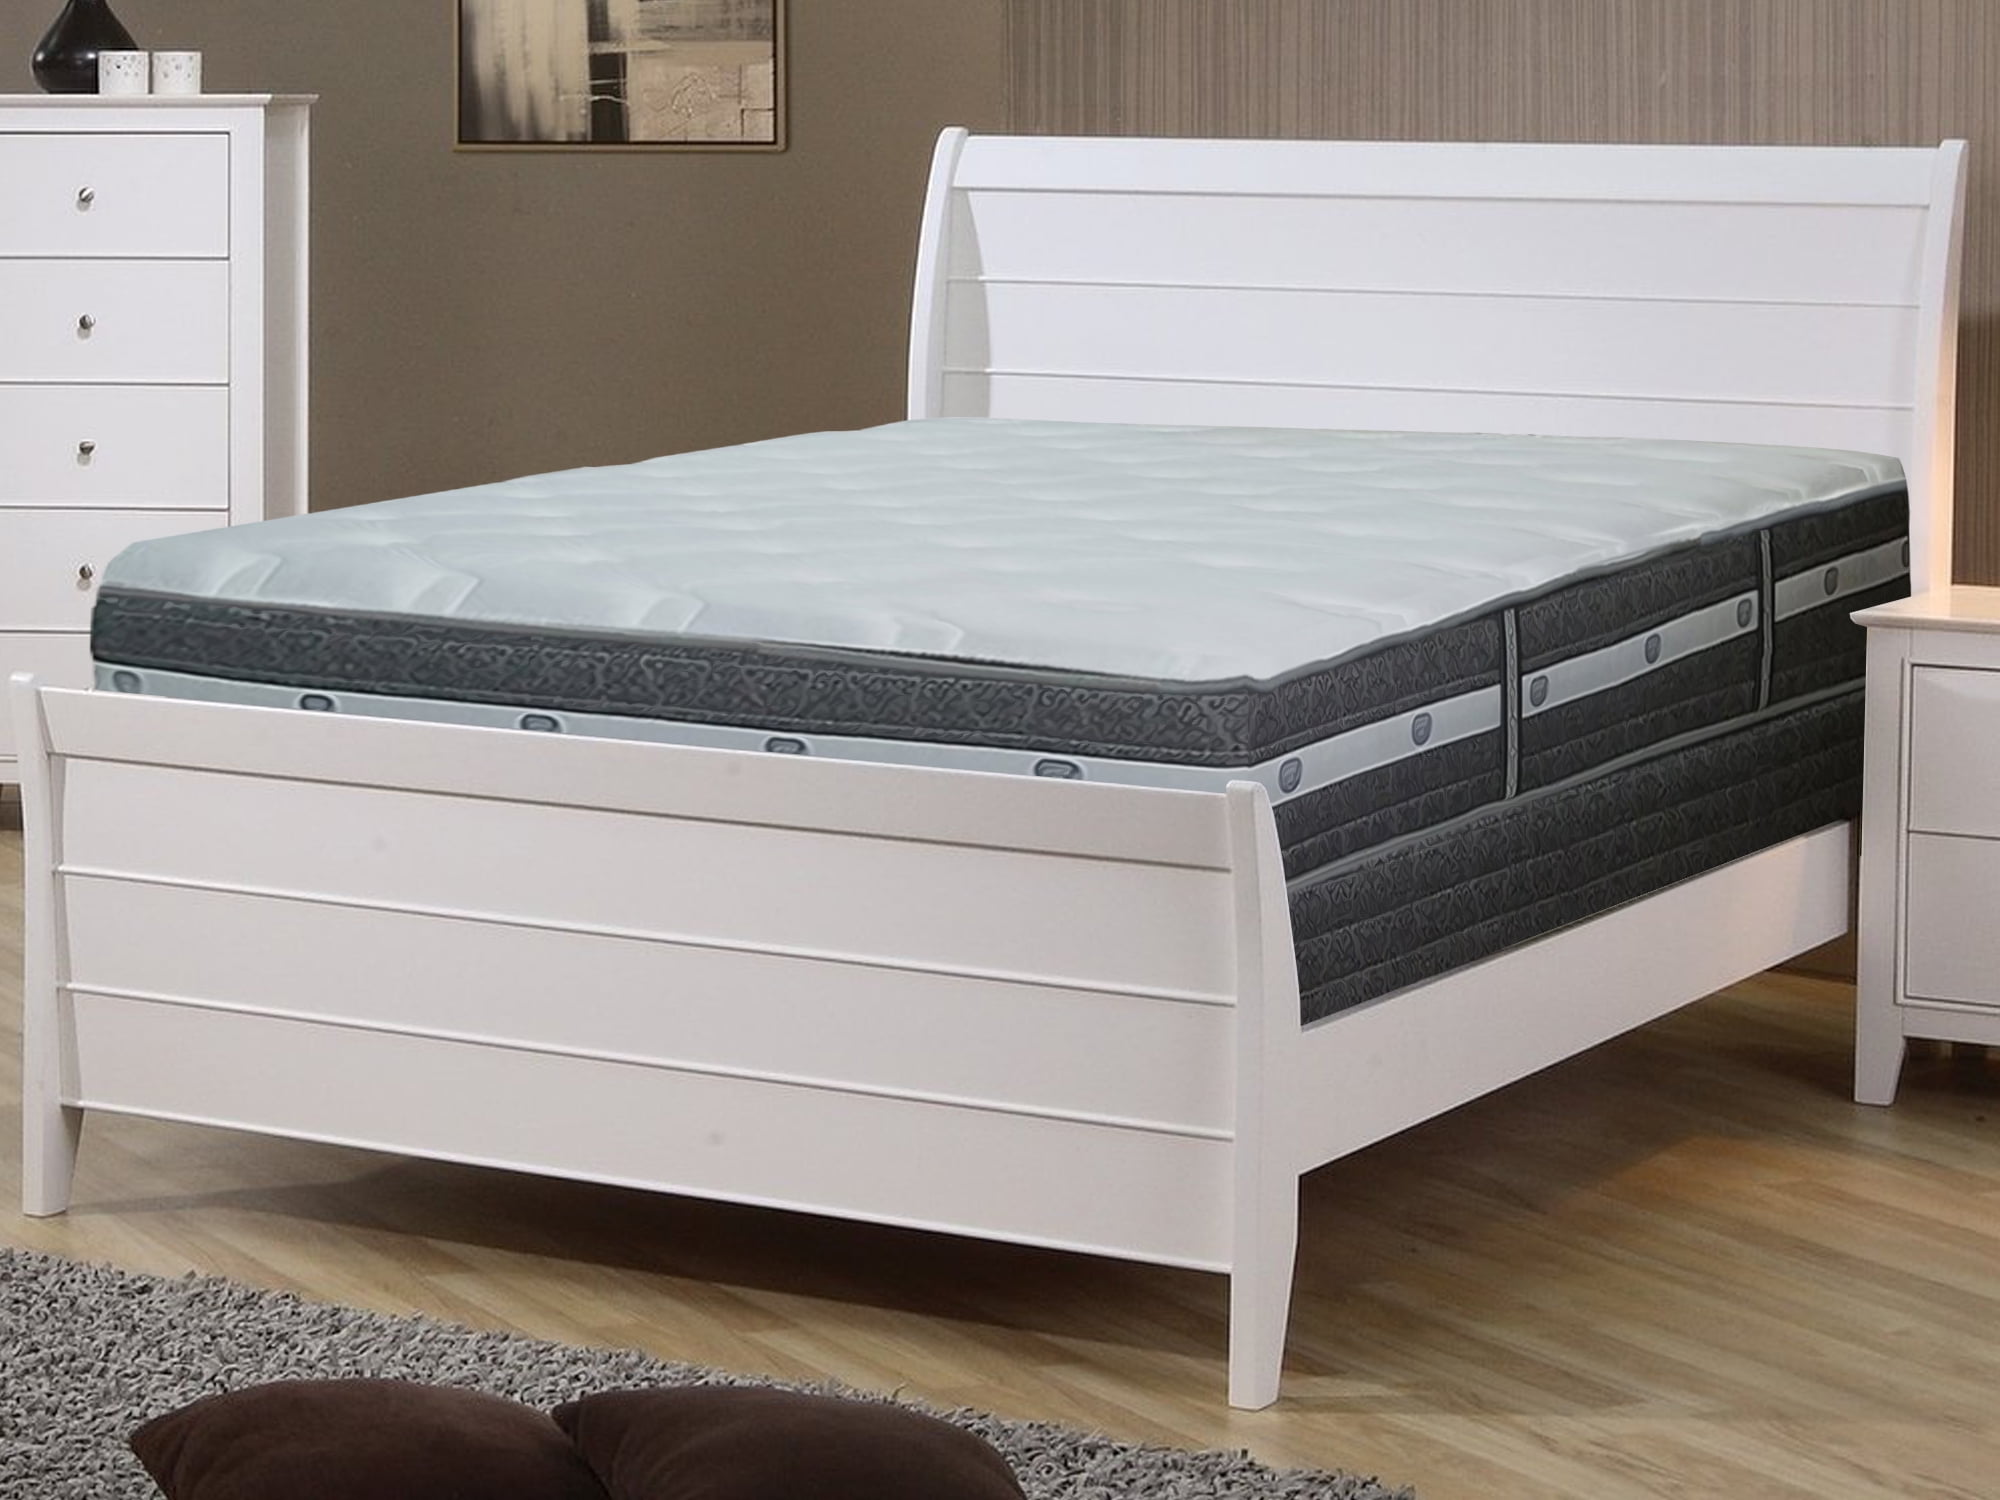 mattress firm sleep box